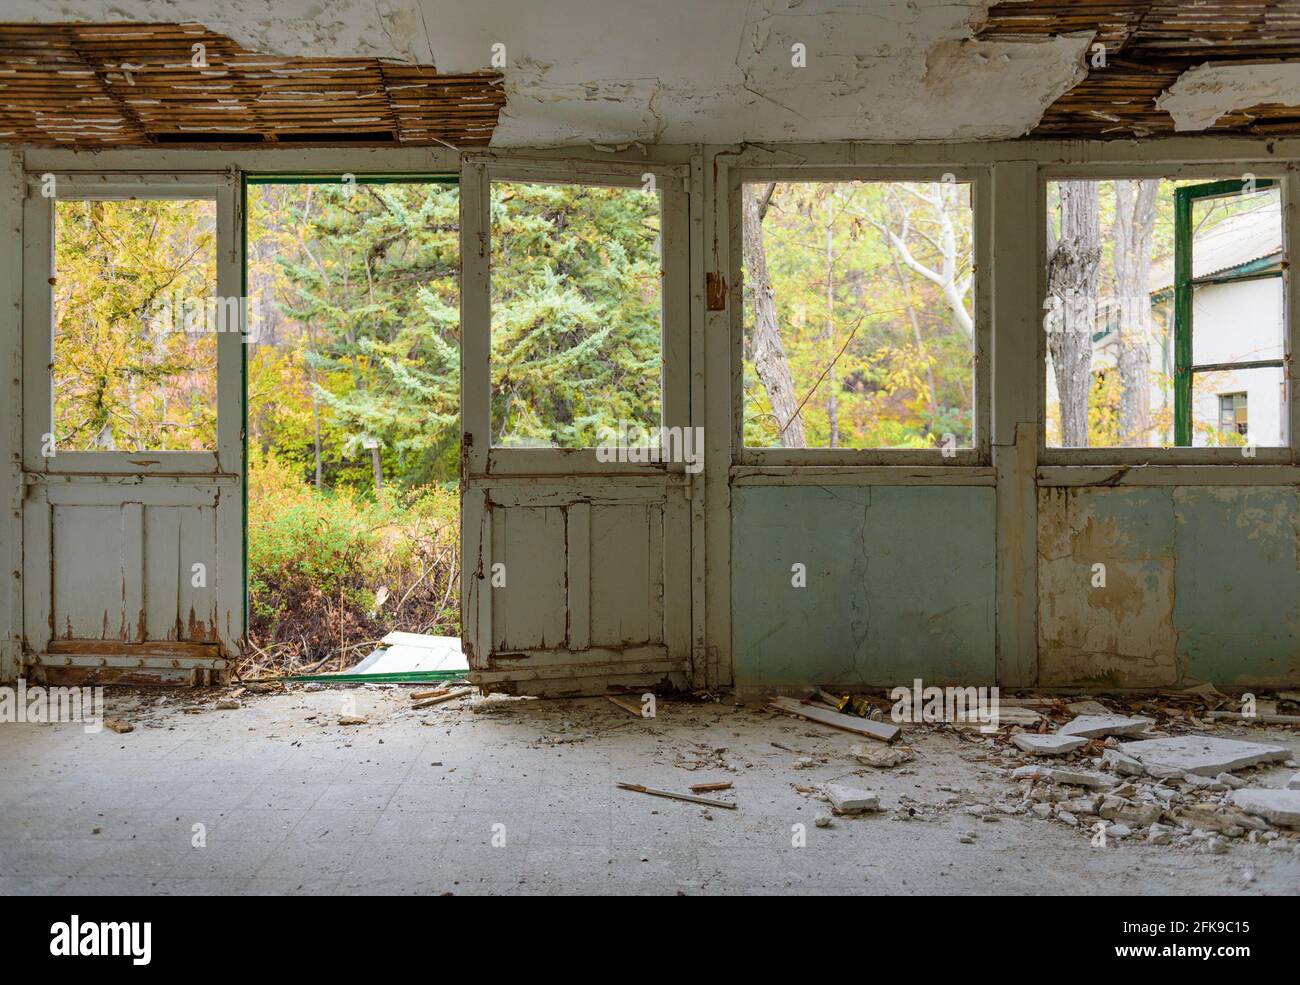 Intérieur de la maison abandonnée. Galerie avec cadres de porte et de fenêtre, verre brisé et plâtre tombé, jardin d'automne surcultivé vu par les fenêtres Banque D'Images